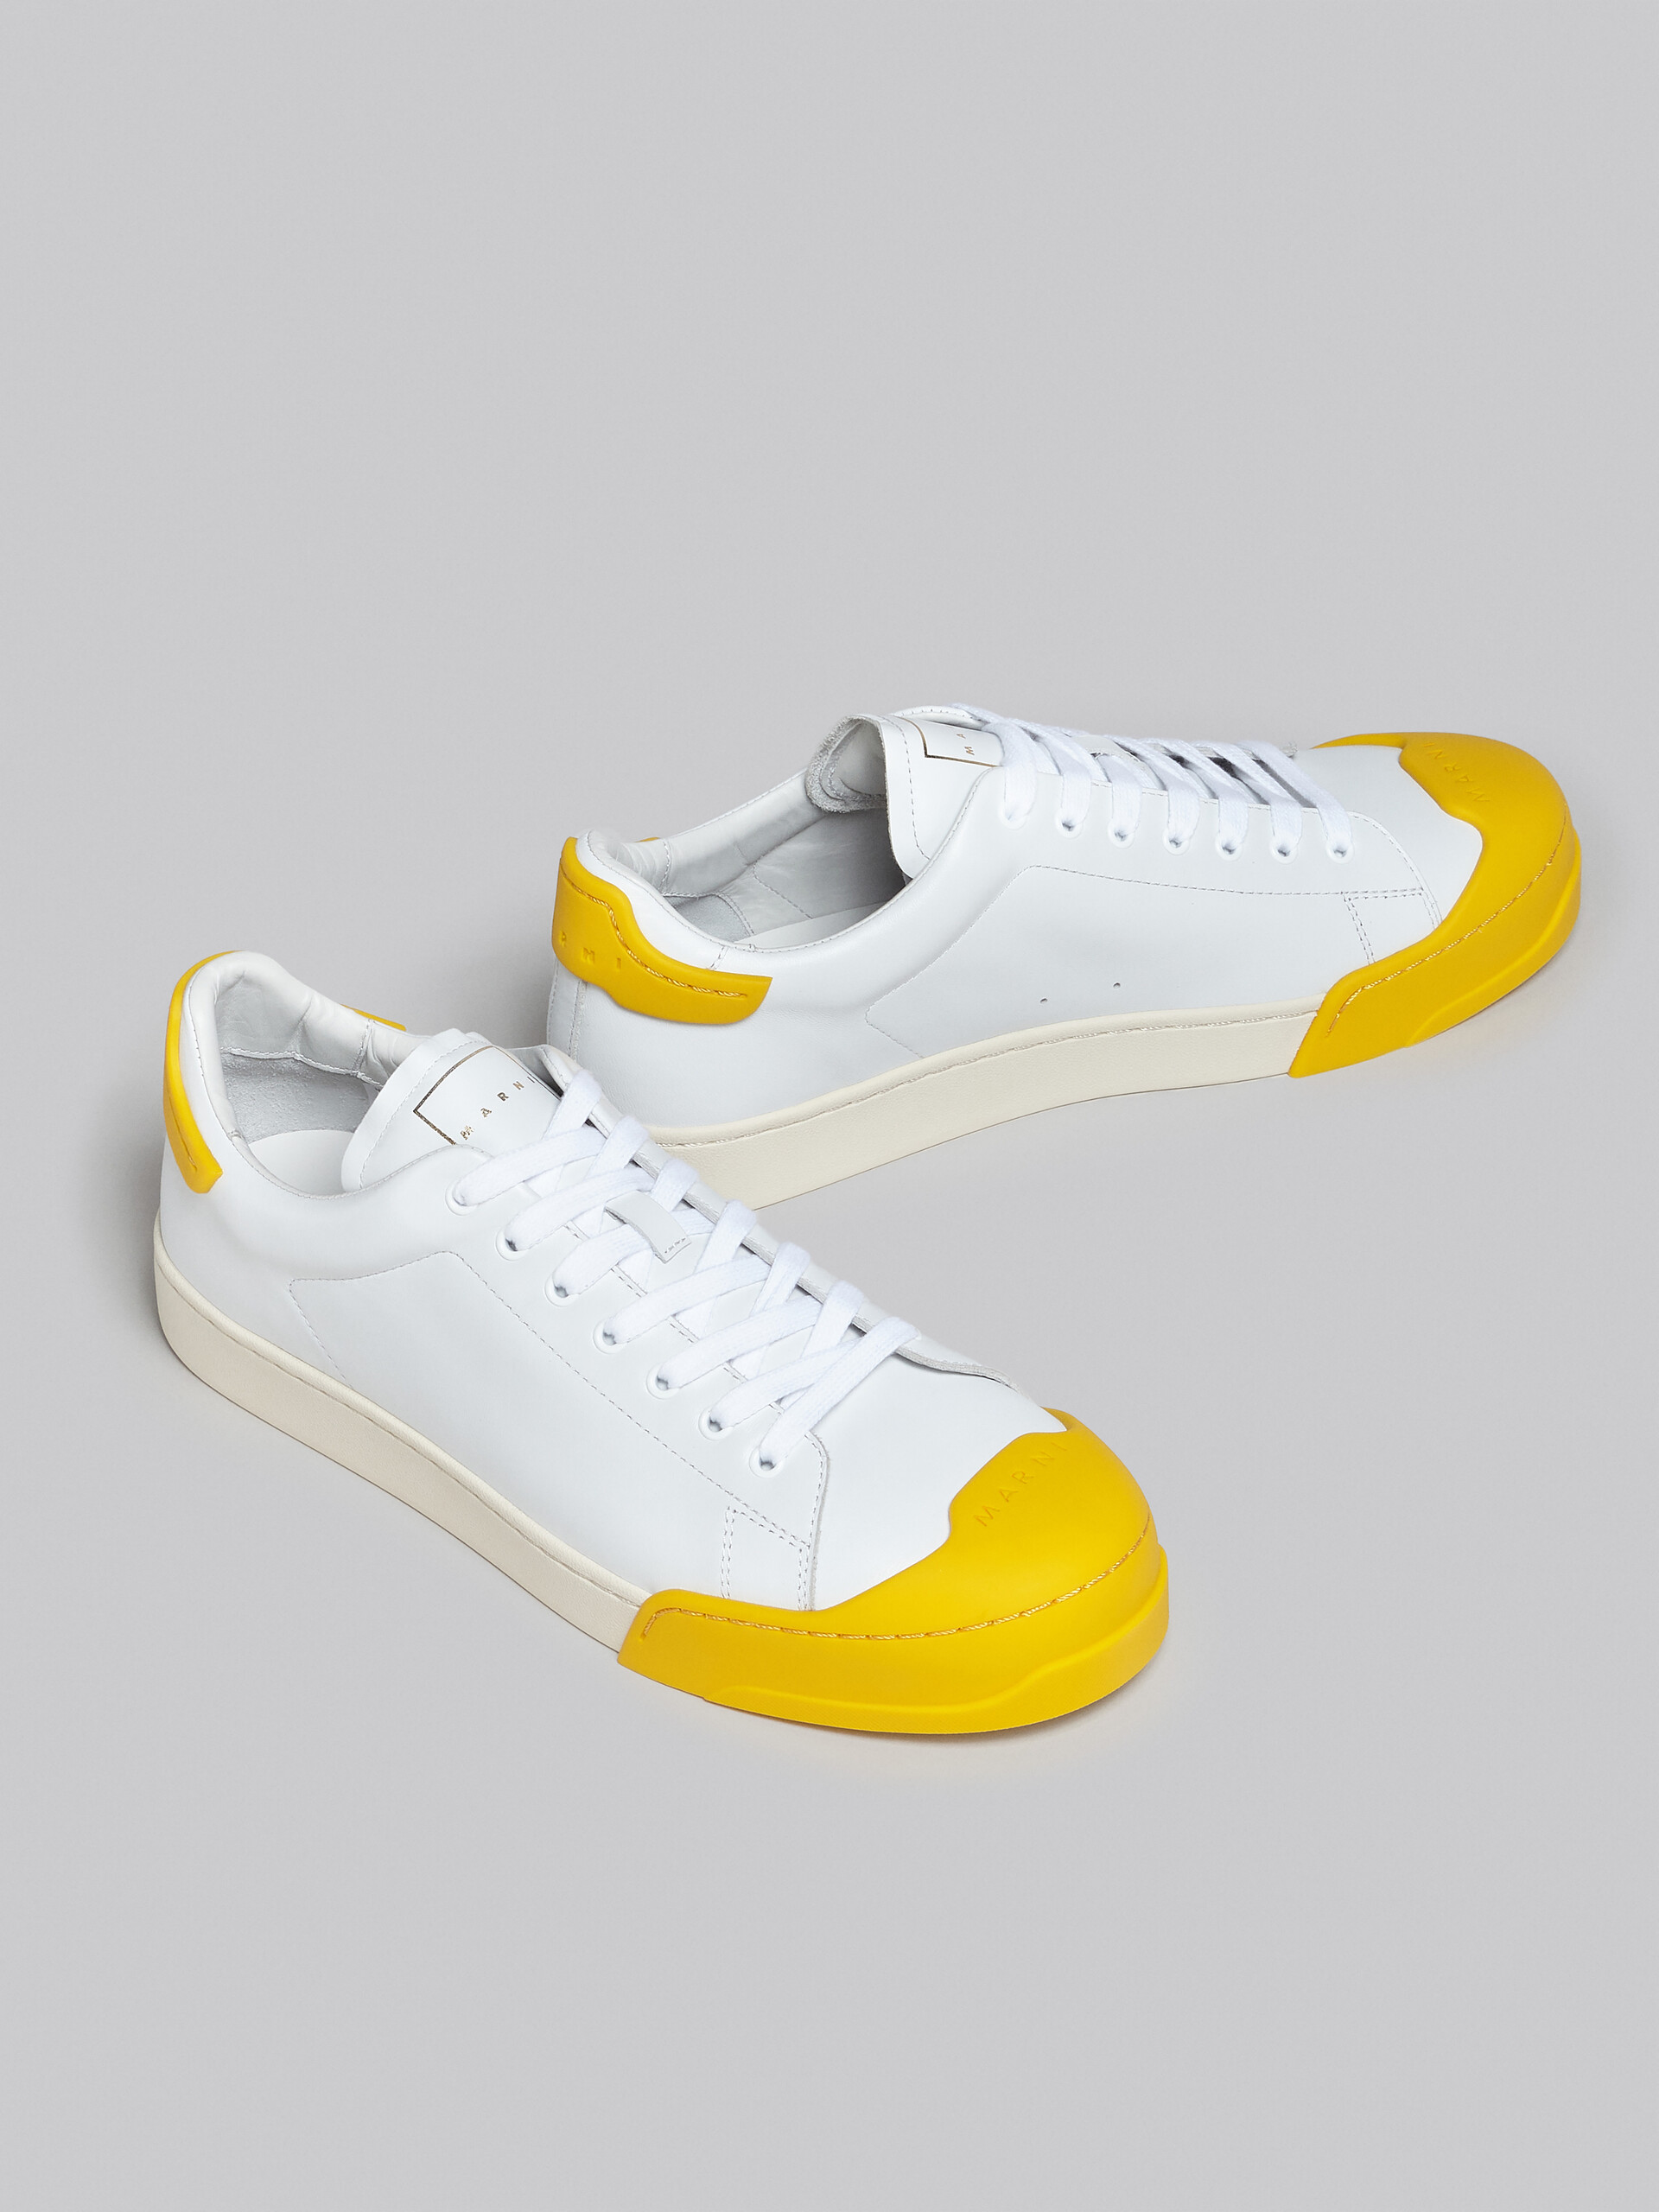 Ledersneakers Dada Bumper in Weiß und Gelb - Sneakers - Image 5